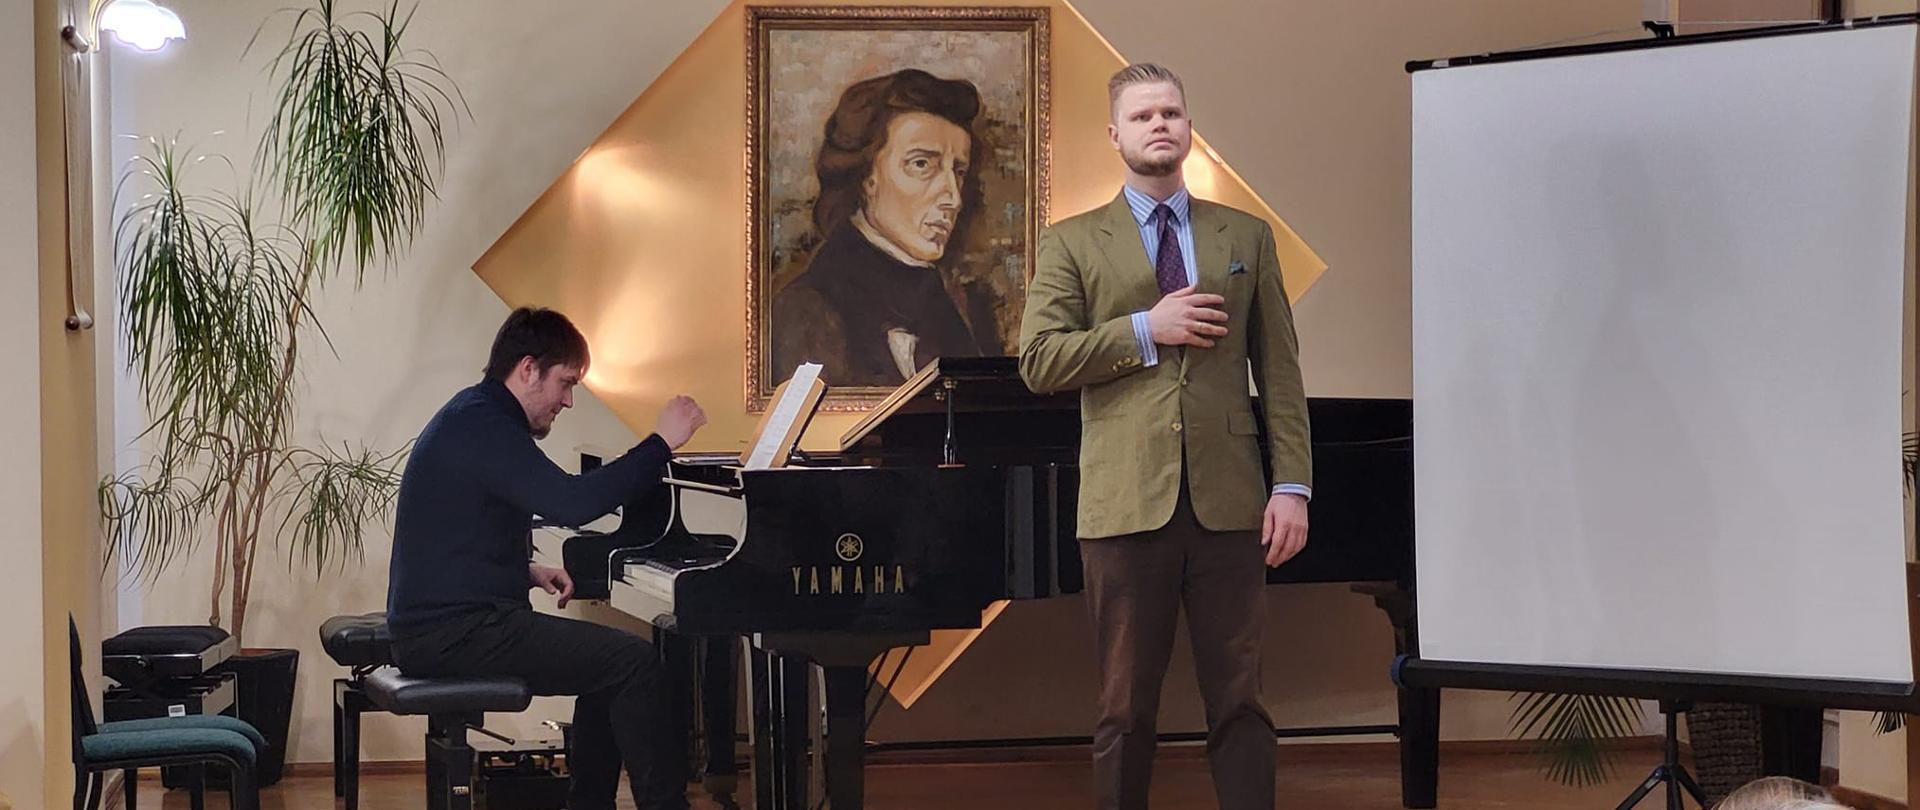 Na zdjęciu od lewej Michał Michalski grający na fortepianie, a po prawej stronie śpiewający David Stoklosa , w tle zdjęcia widoczny portret F. Chopina, na przodzie zdjęciu widoczna publiczność. Zdjęcie wykonane w auli PSM Kłodzko, podczas koncertu z okazji obchodów dnia patrona szkoły - 01 marca 2023 r.